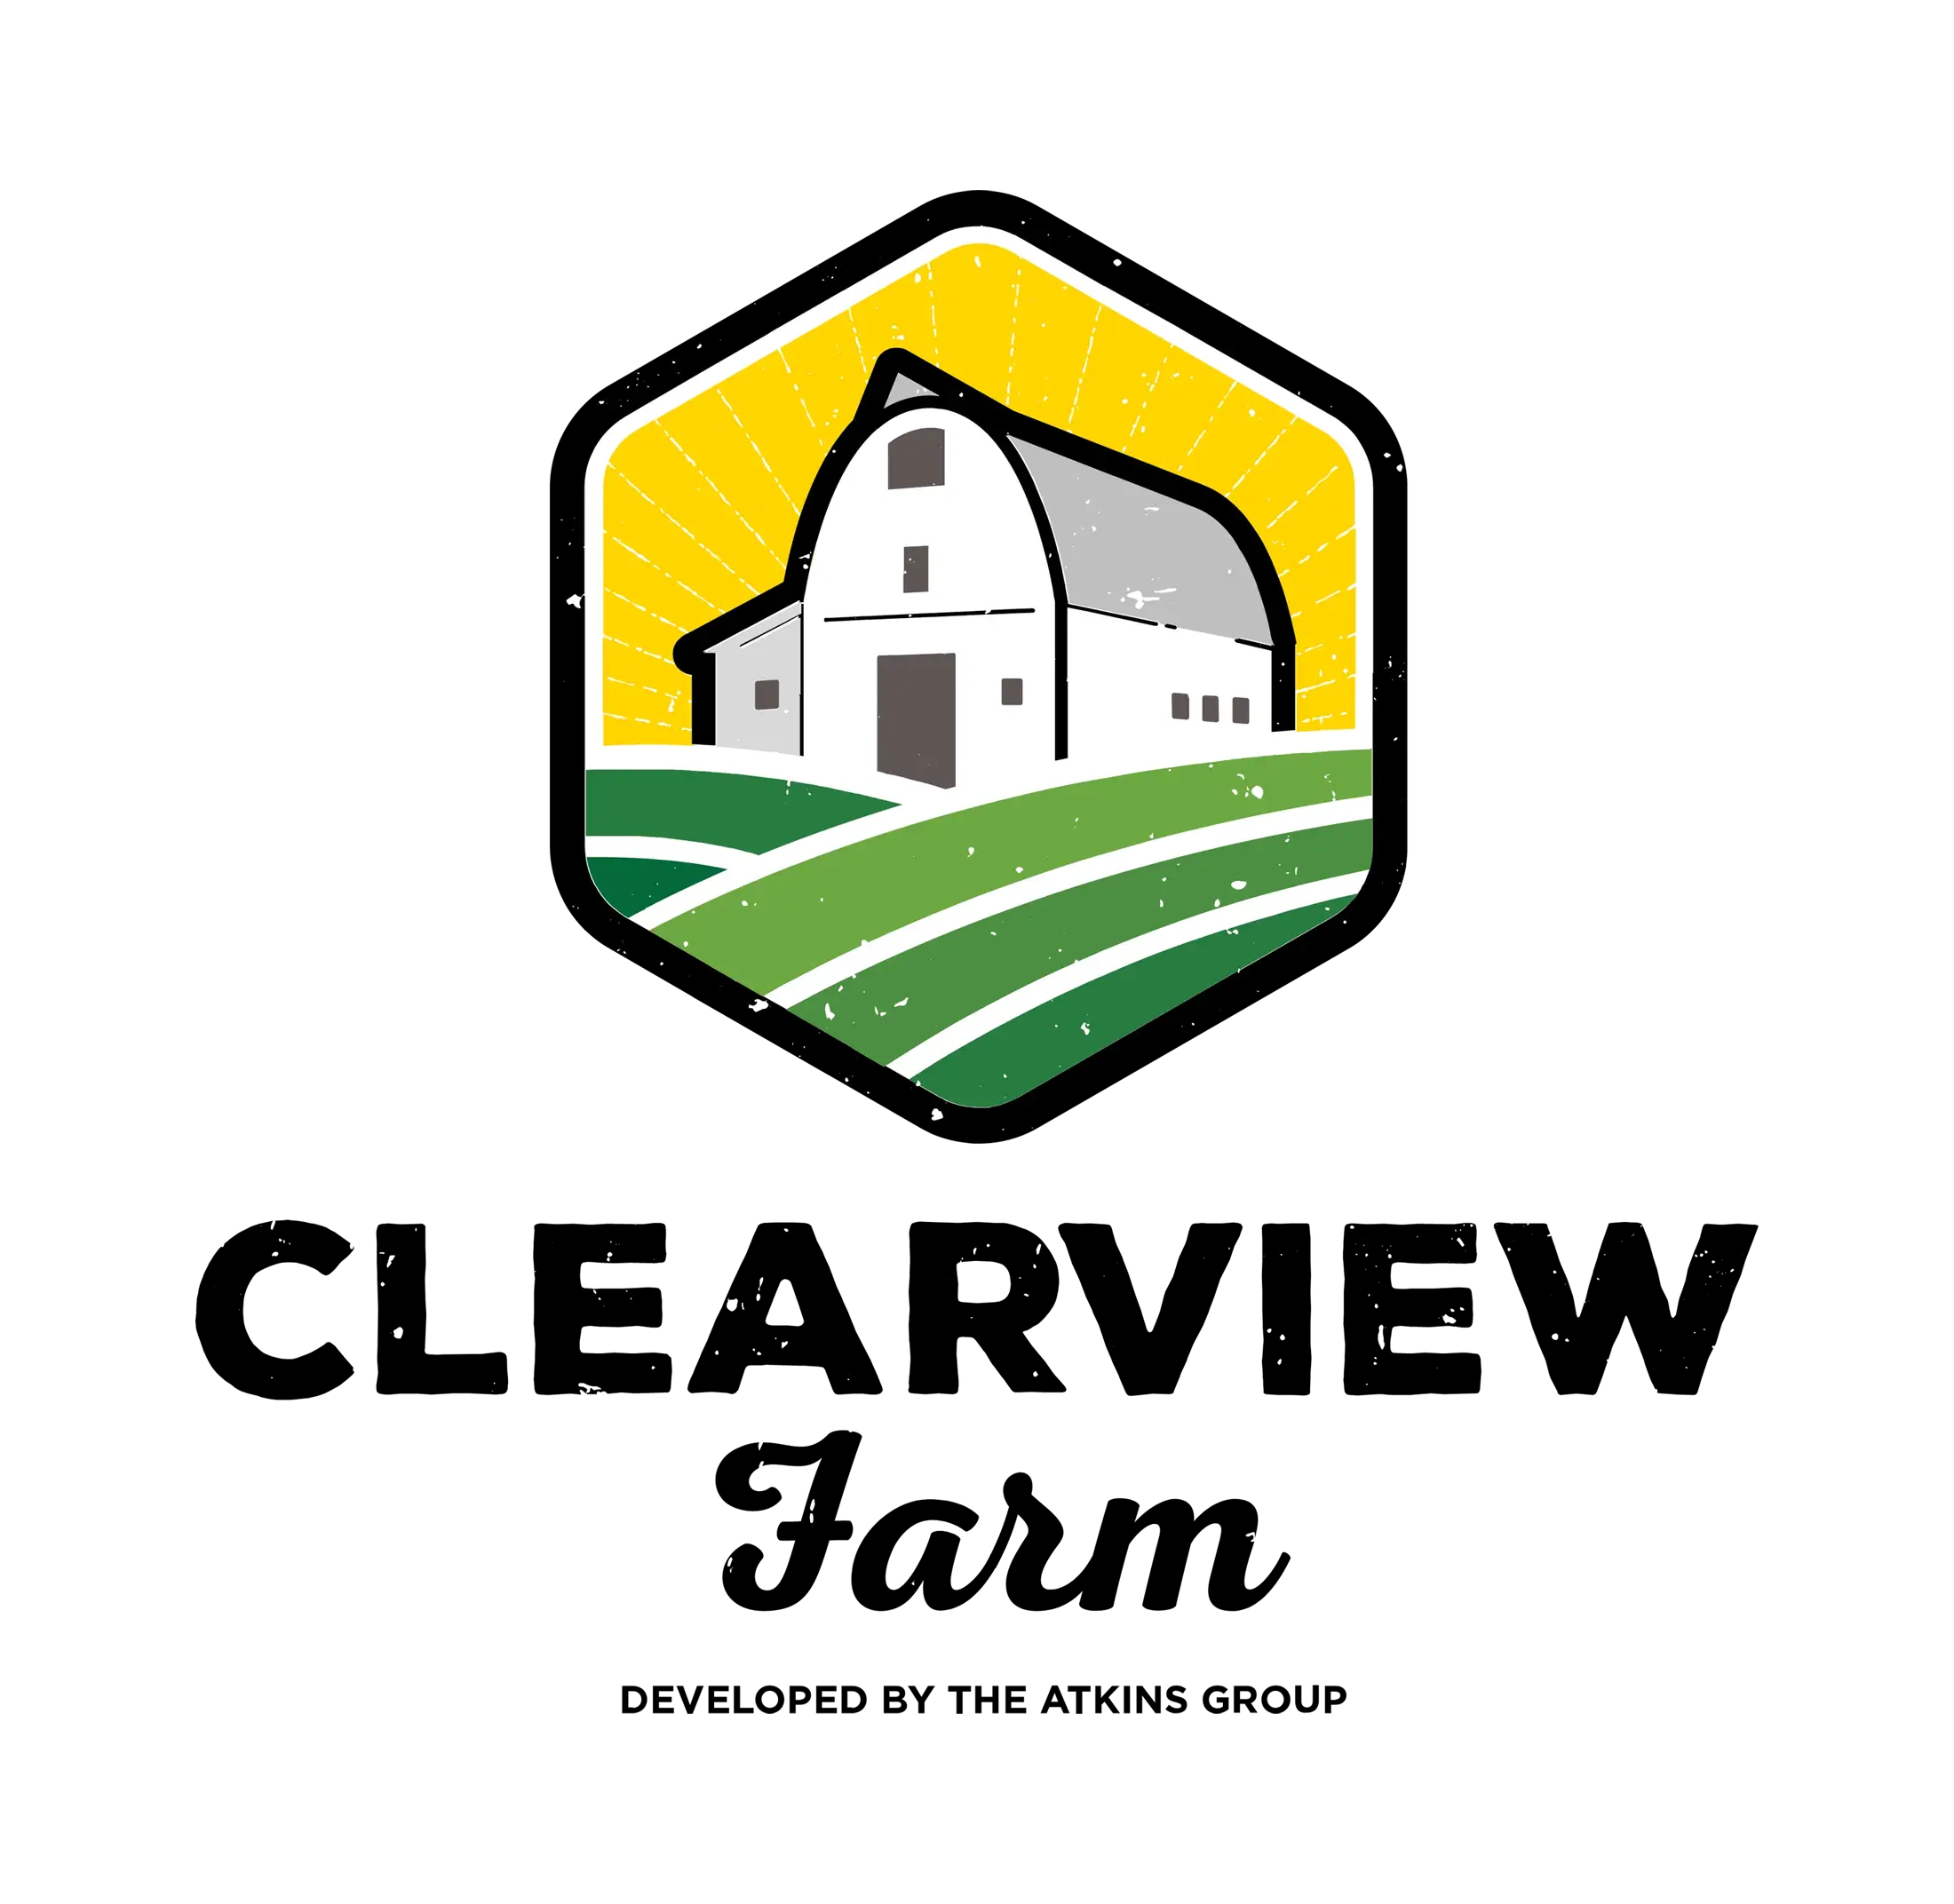 A farm logo on a black background.